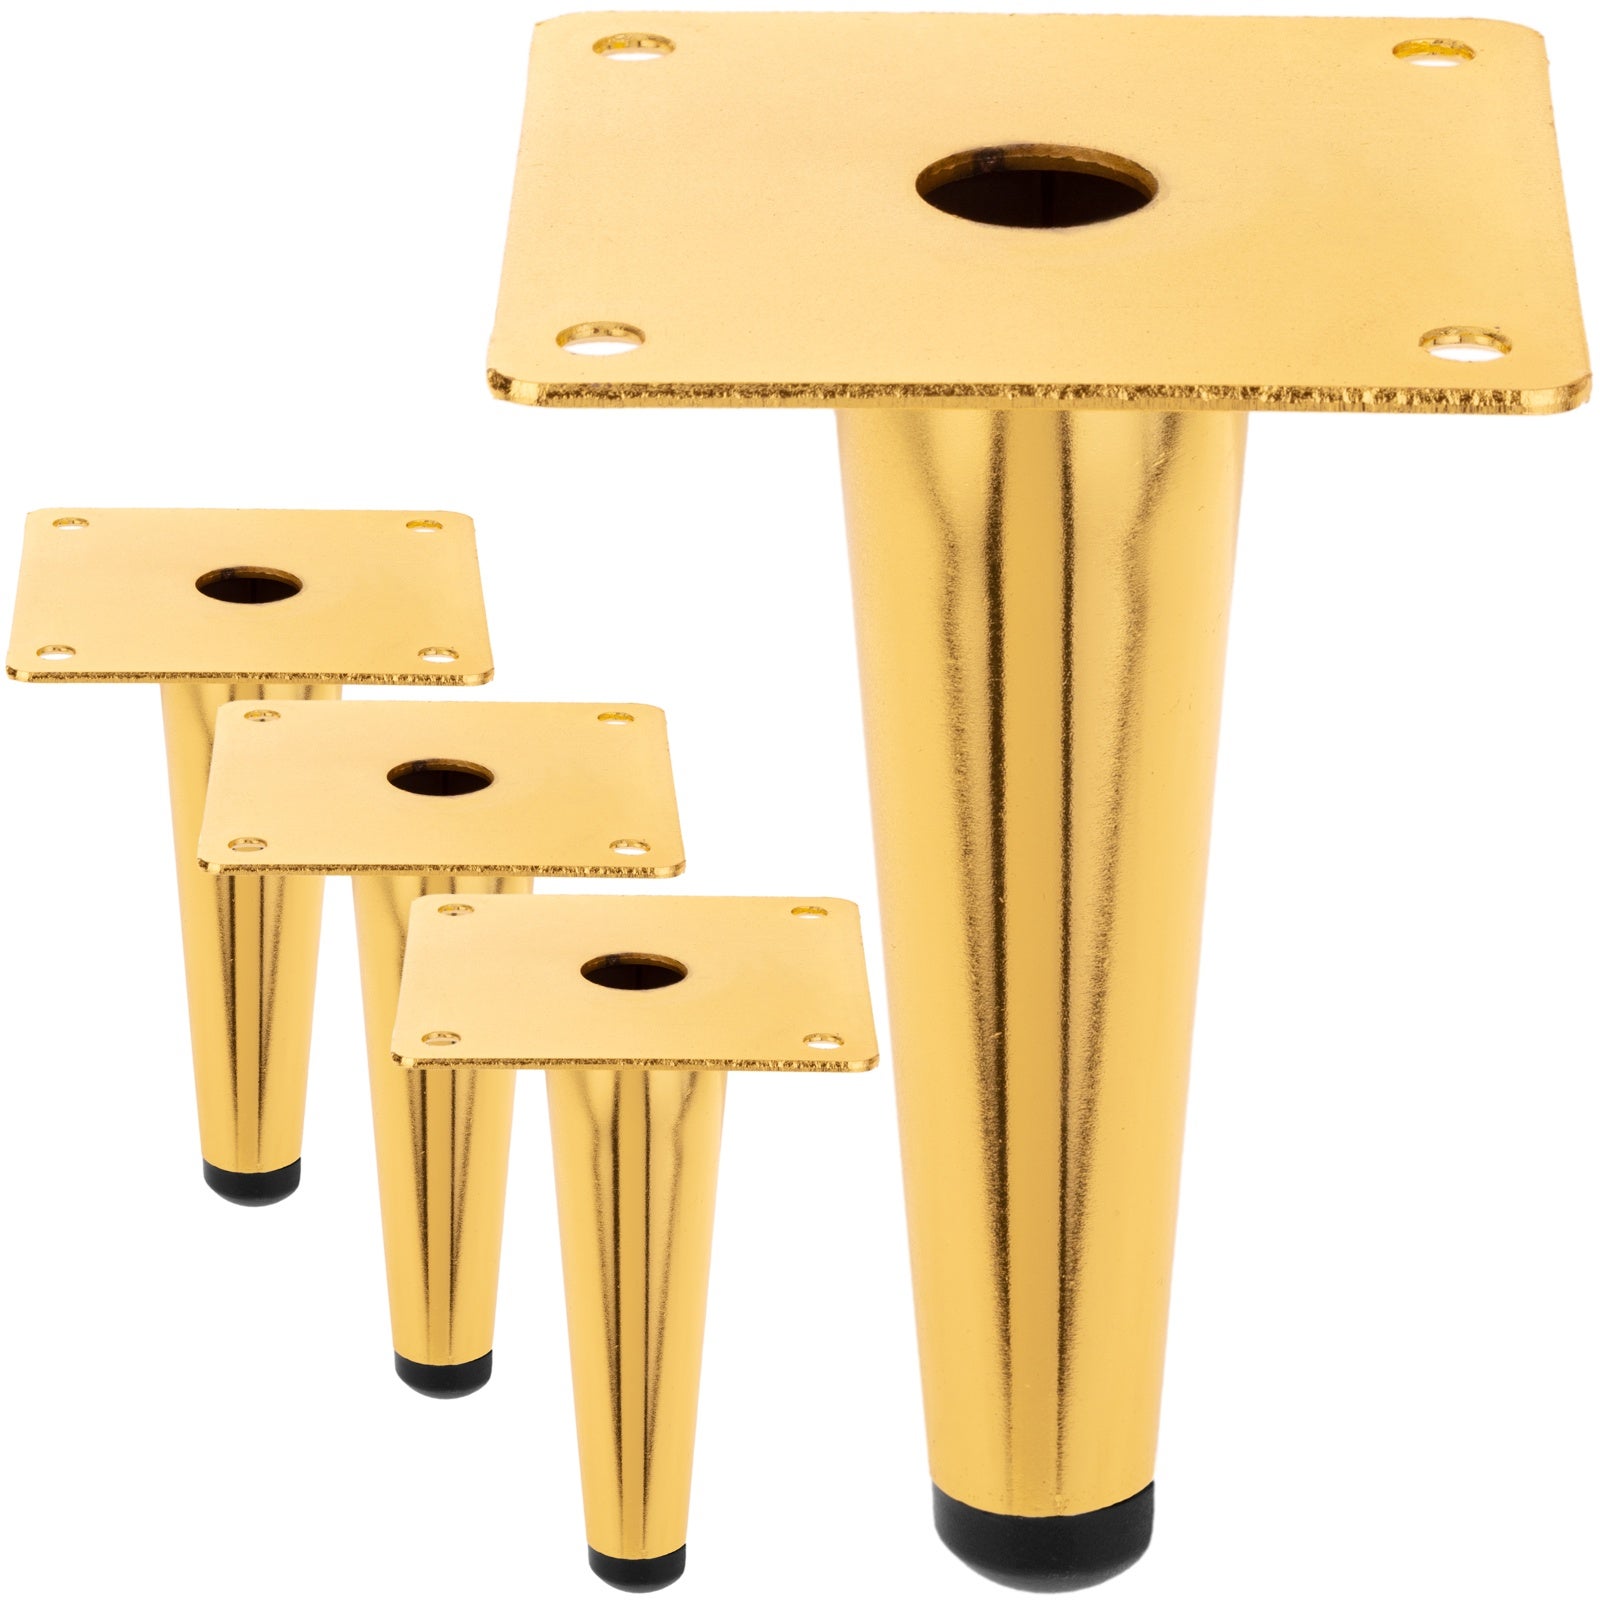 Patas de Metal cónicas ajustables para muebles, patas doradas y